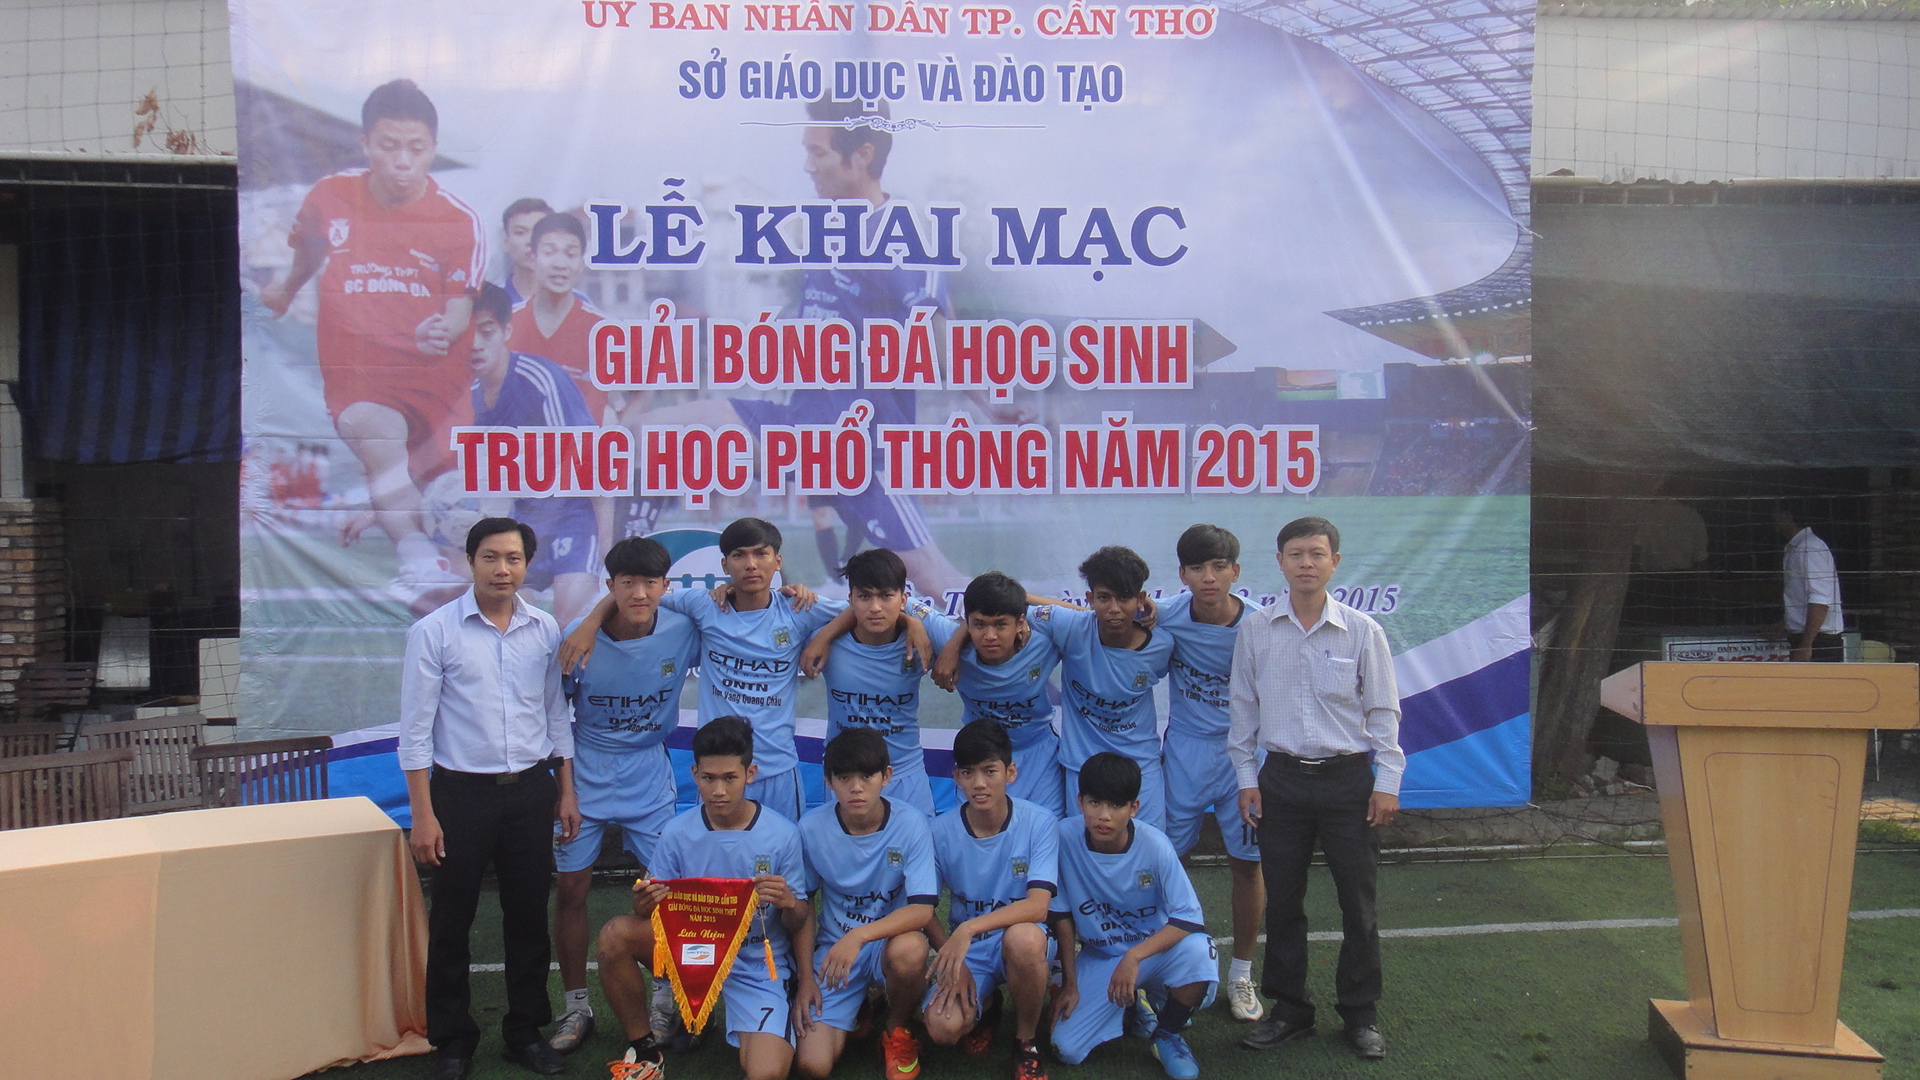 Giải bóng đá học sinh THPT năm 2015